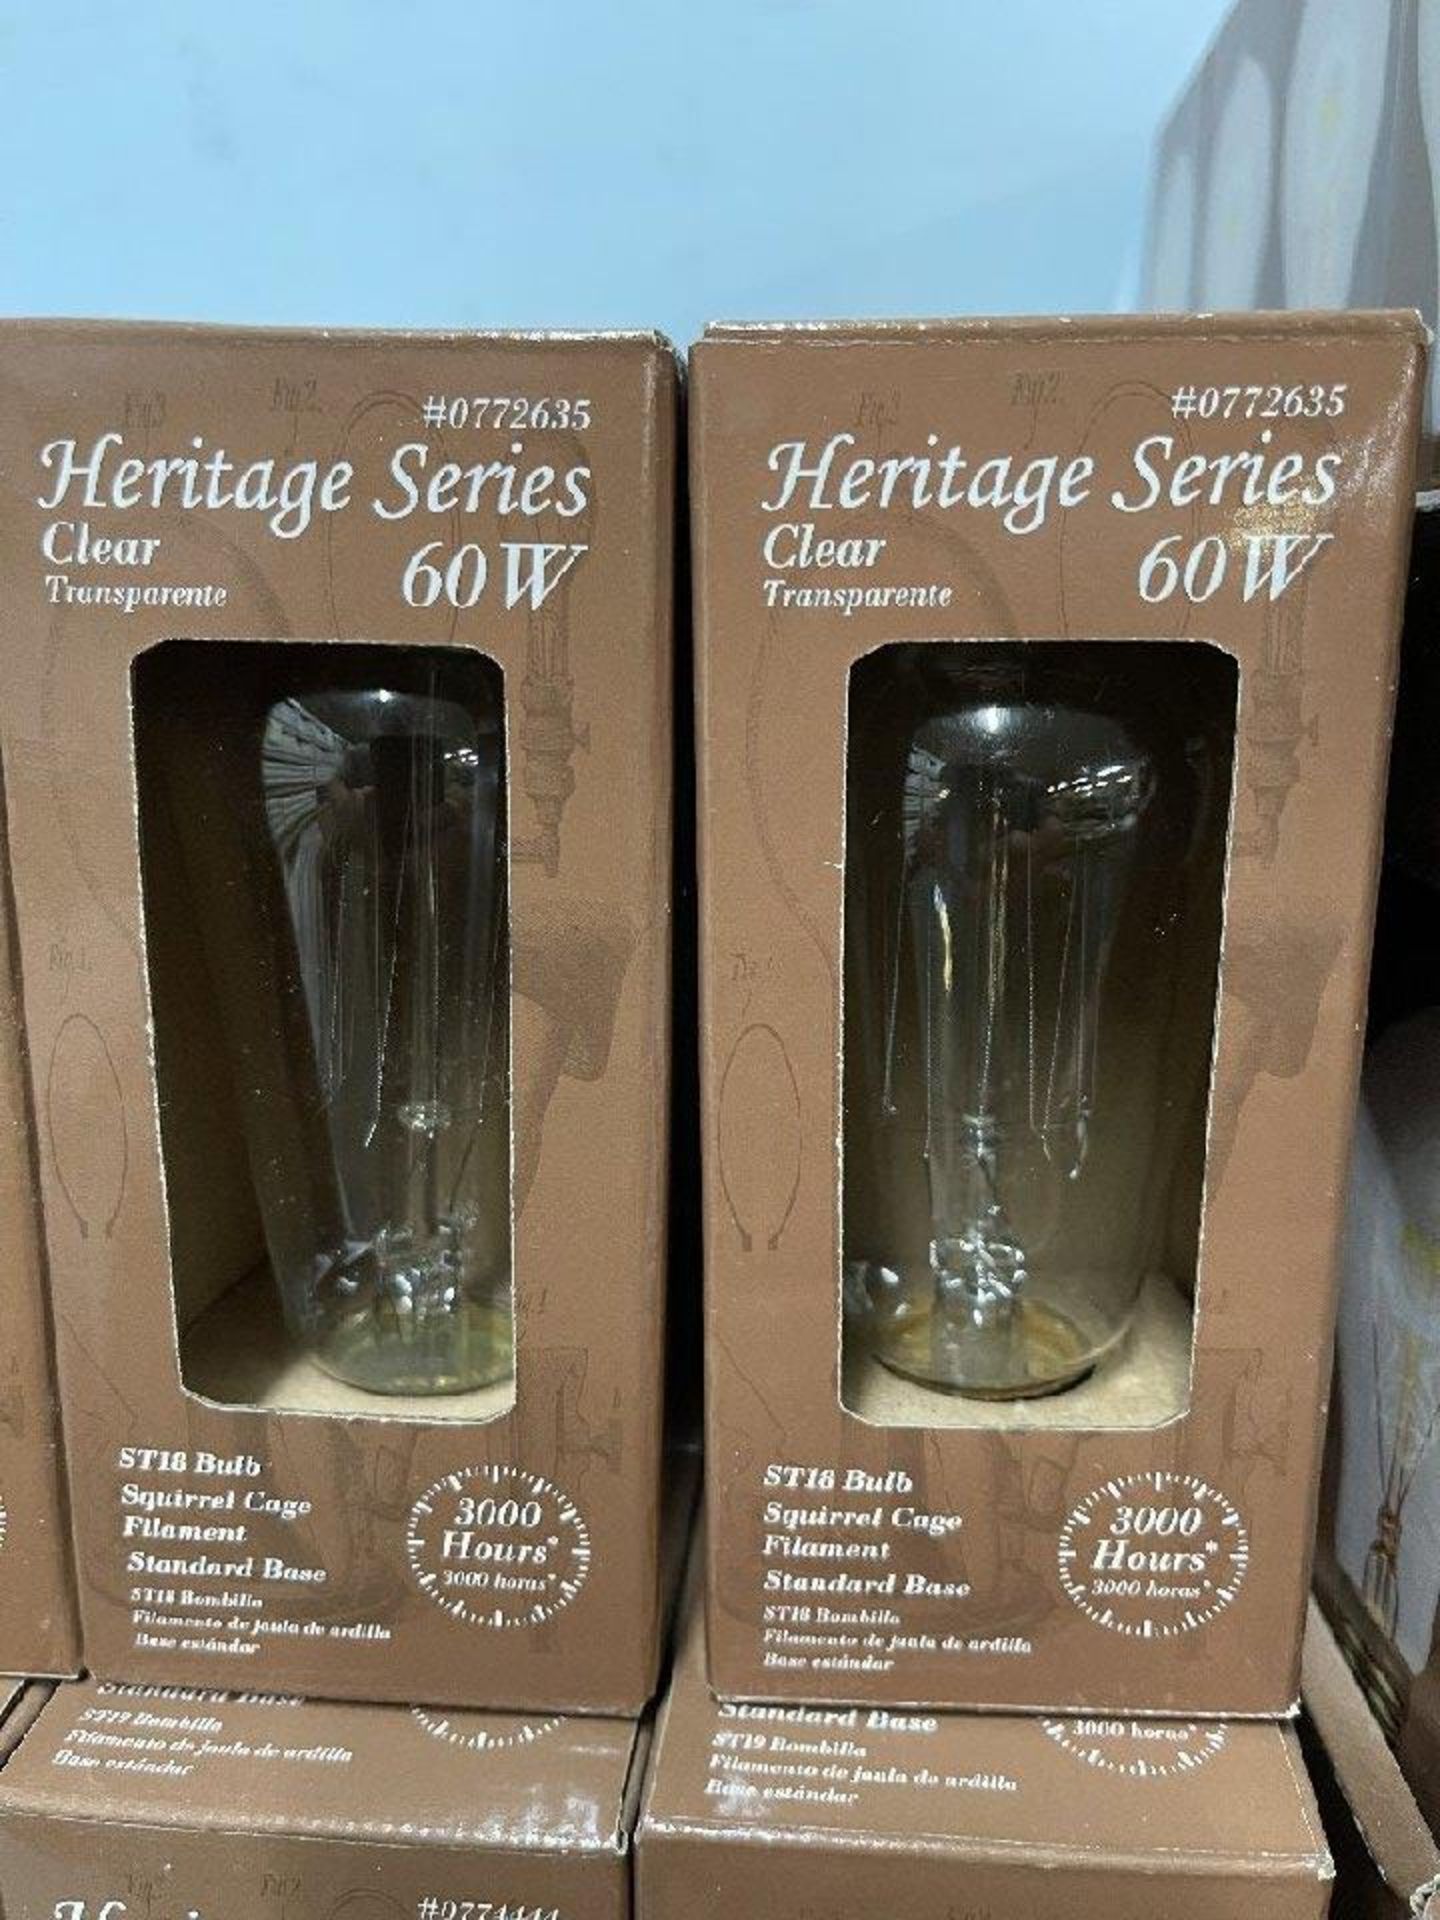 Heritage Series Light Bulbs - Image 2 of 3